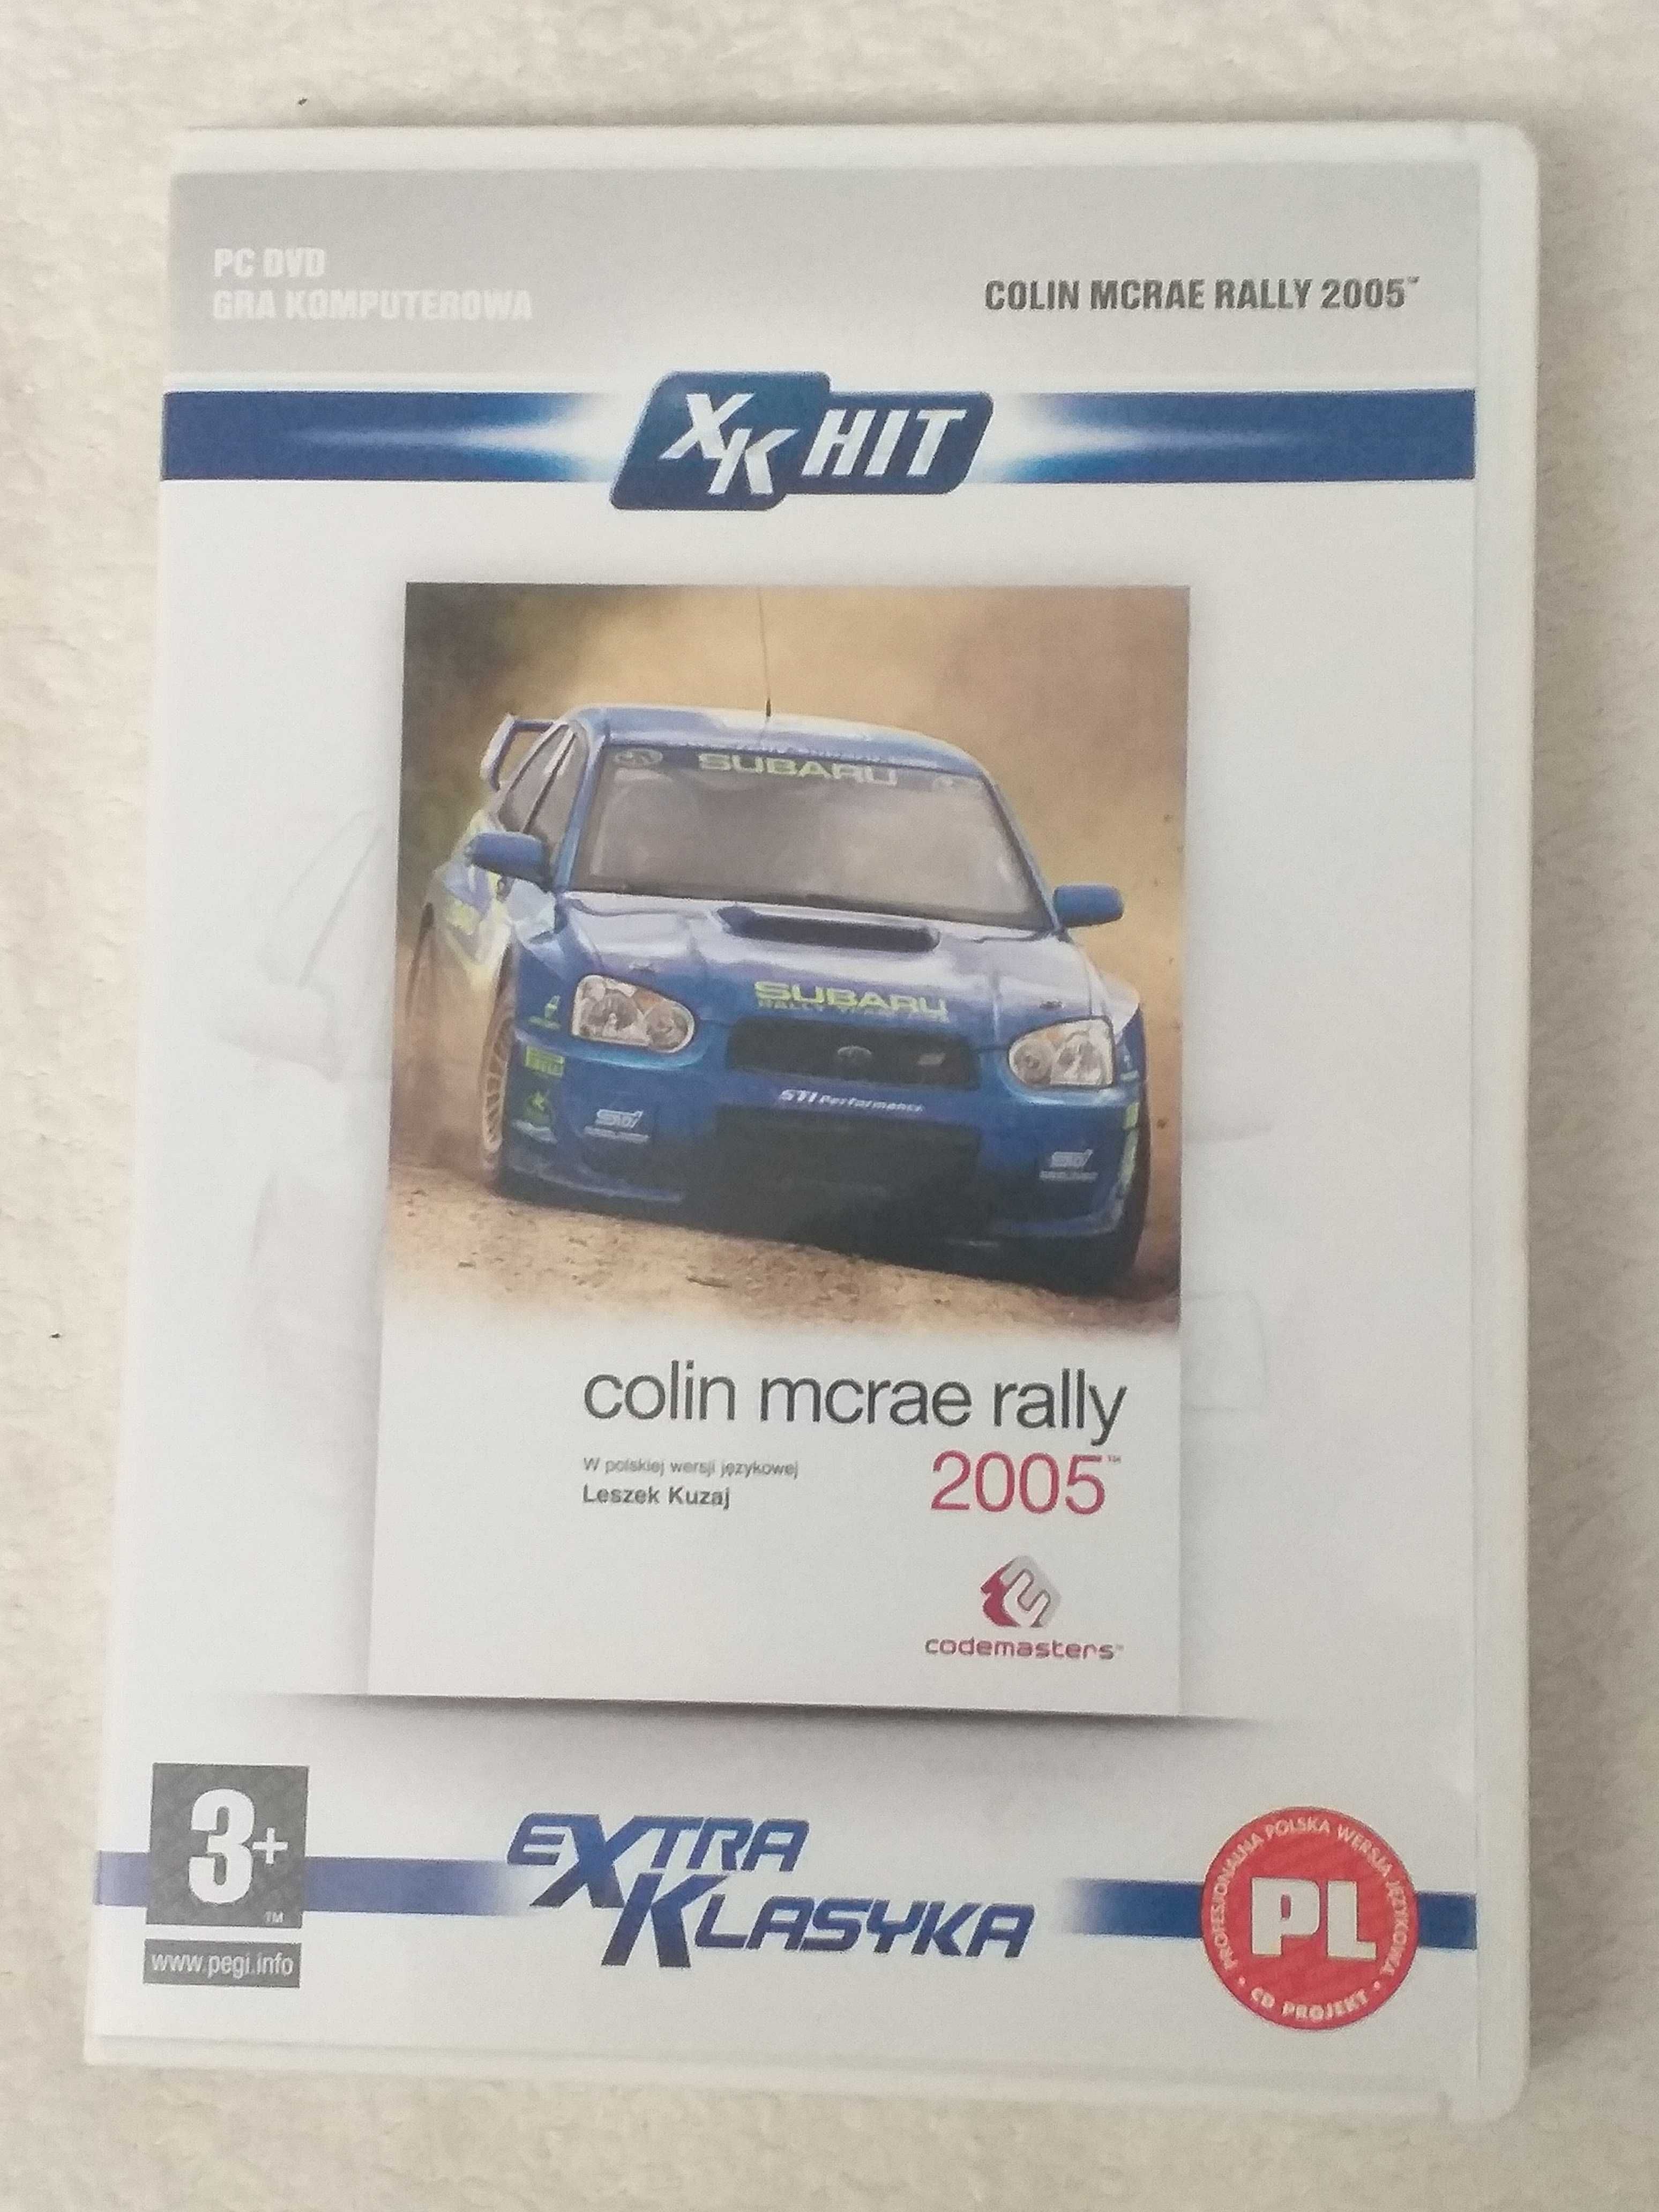 Gra komputerowa Colin Mcrae Rally 2005